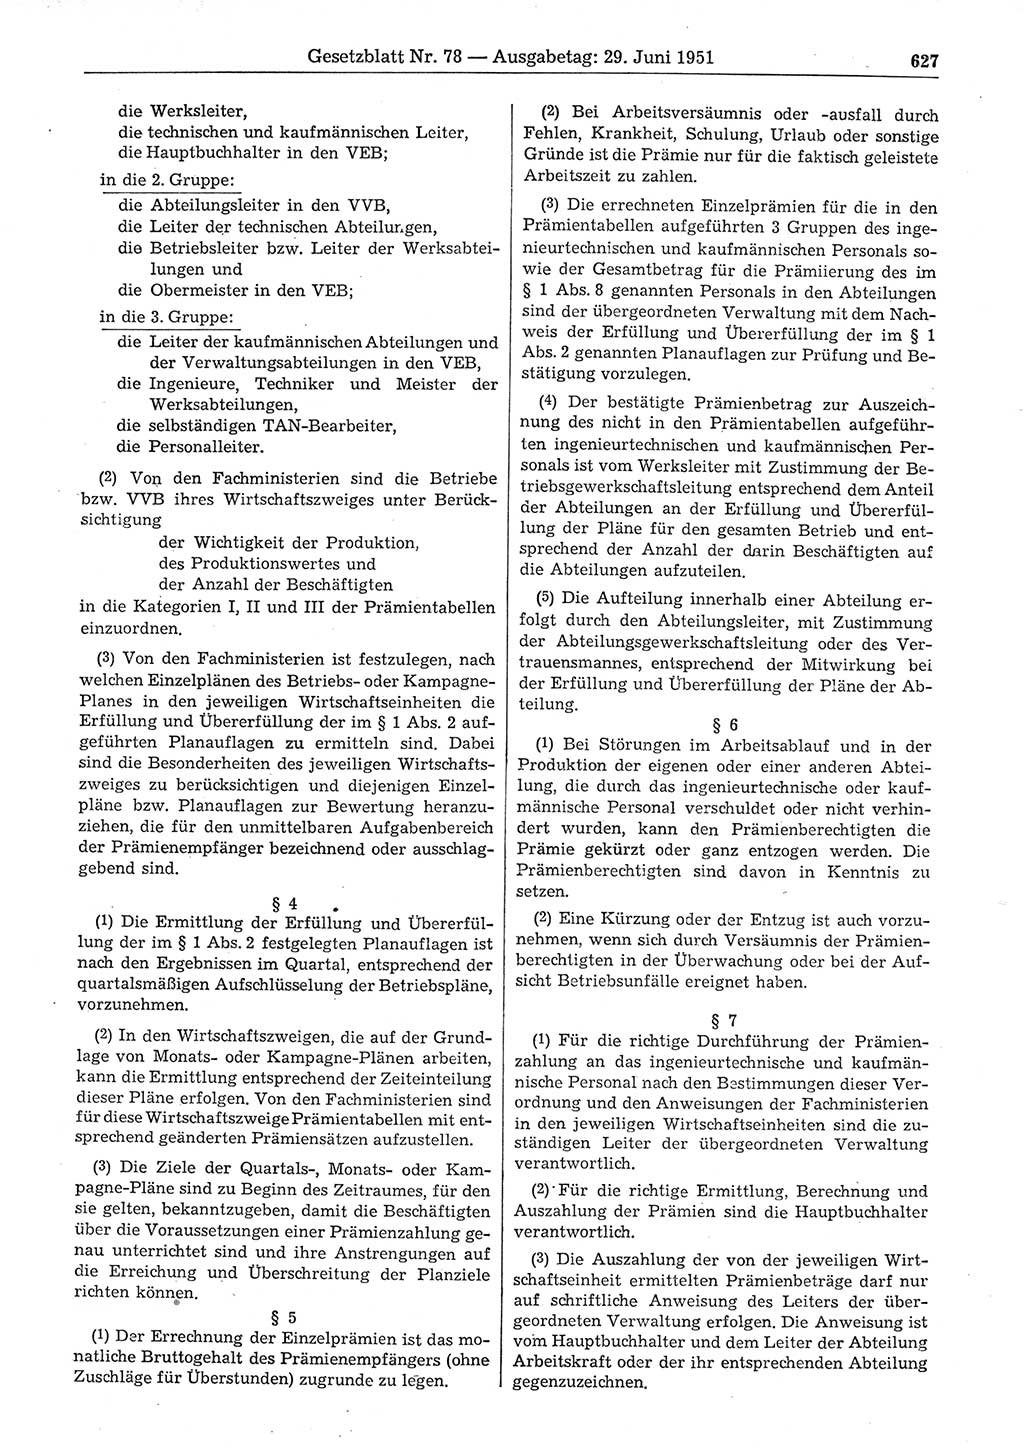 Gesetzblatt (GBl.) der Deutschen Demokratischen Republik (DDR) 1951, Seite 627 (GBl. DDR 1951, S. 627)